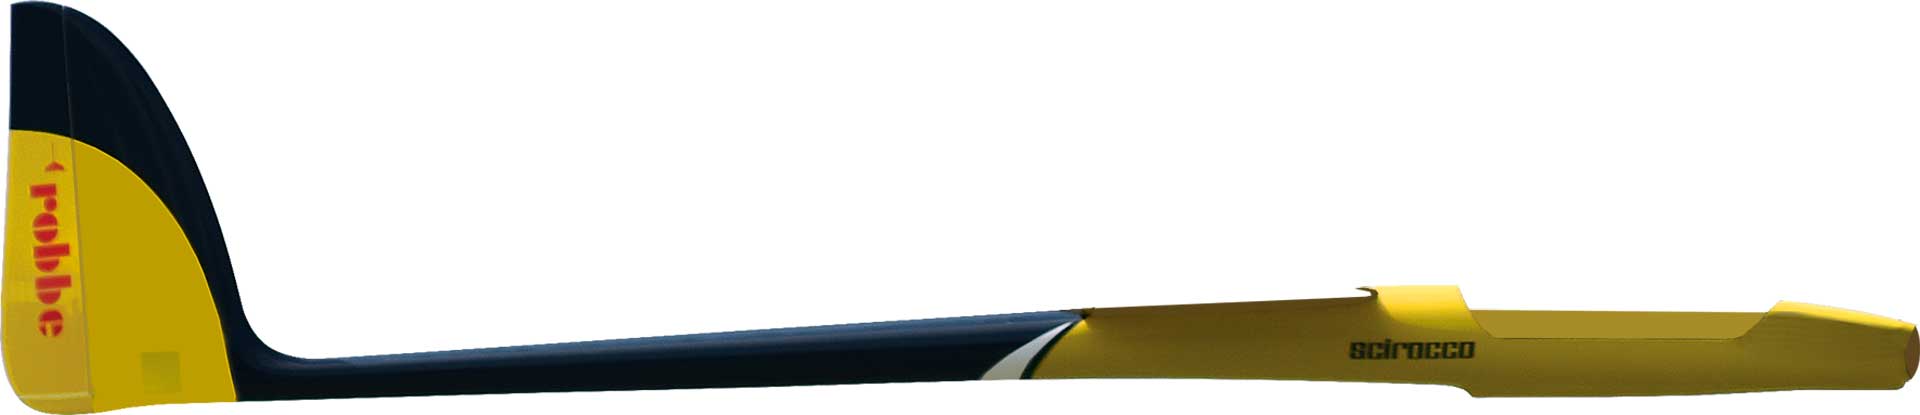 Robbe Modellsport Fuselage SCIROCCO L 4,0M PNP servos pour la hauteur et le côté inclus